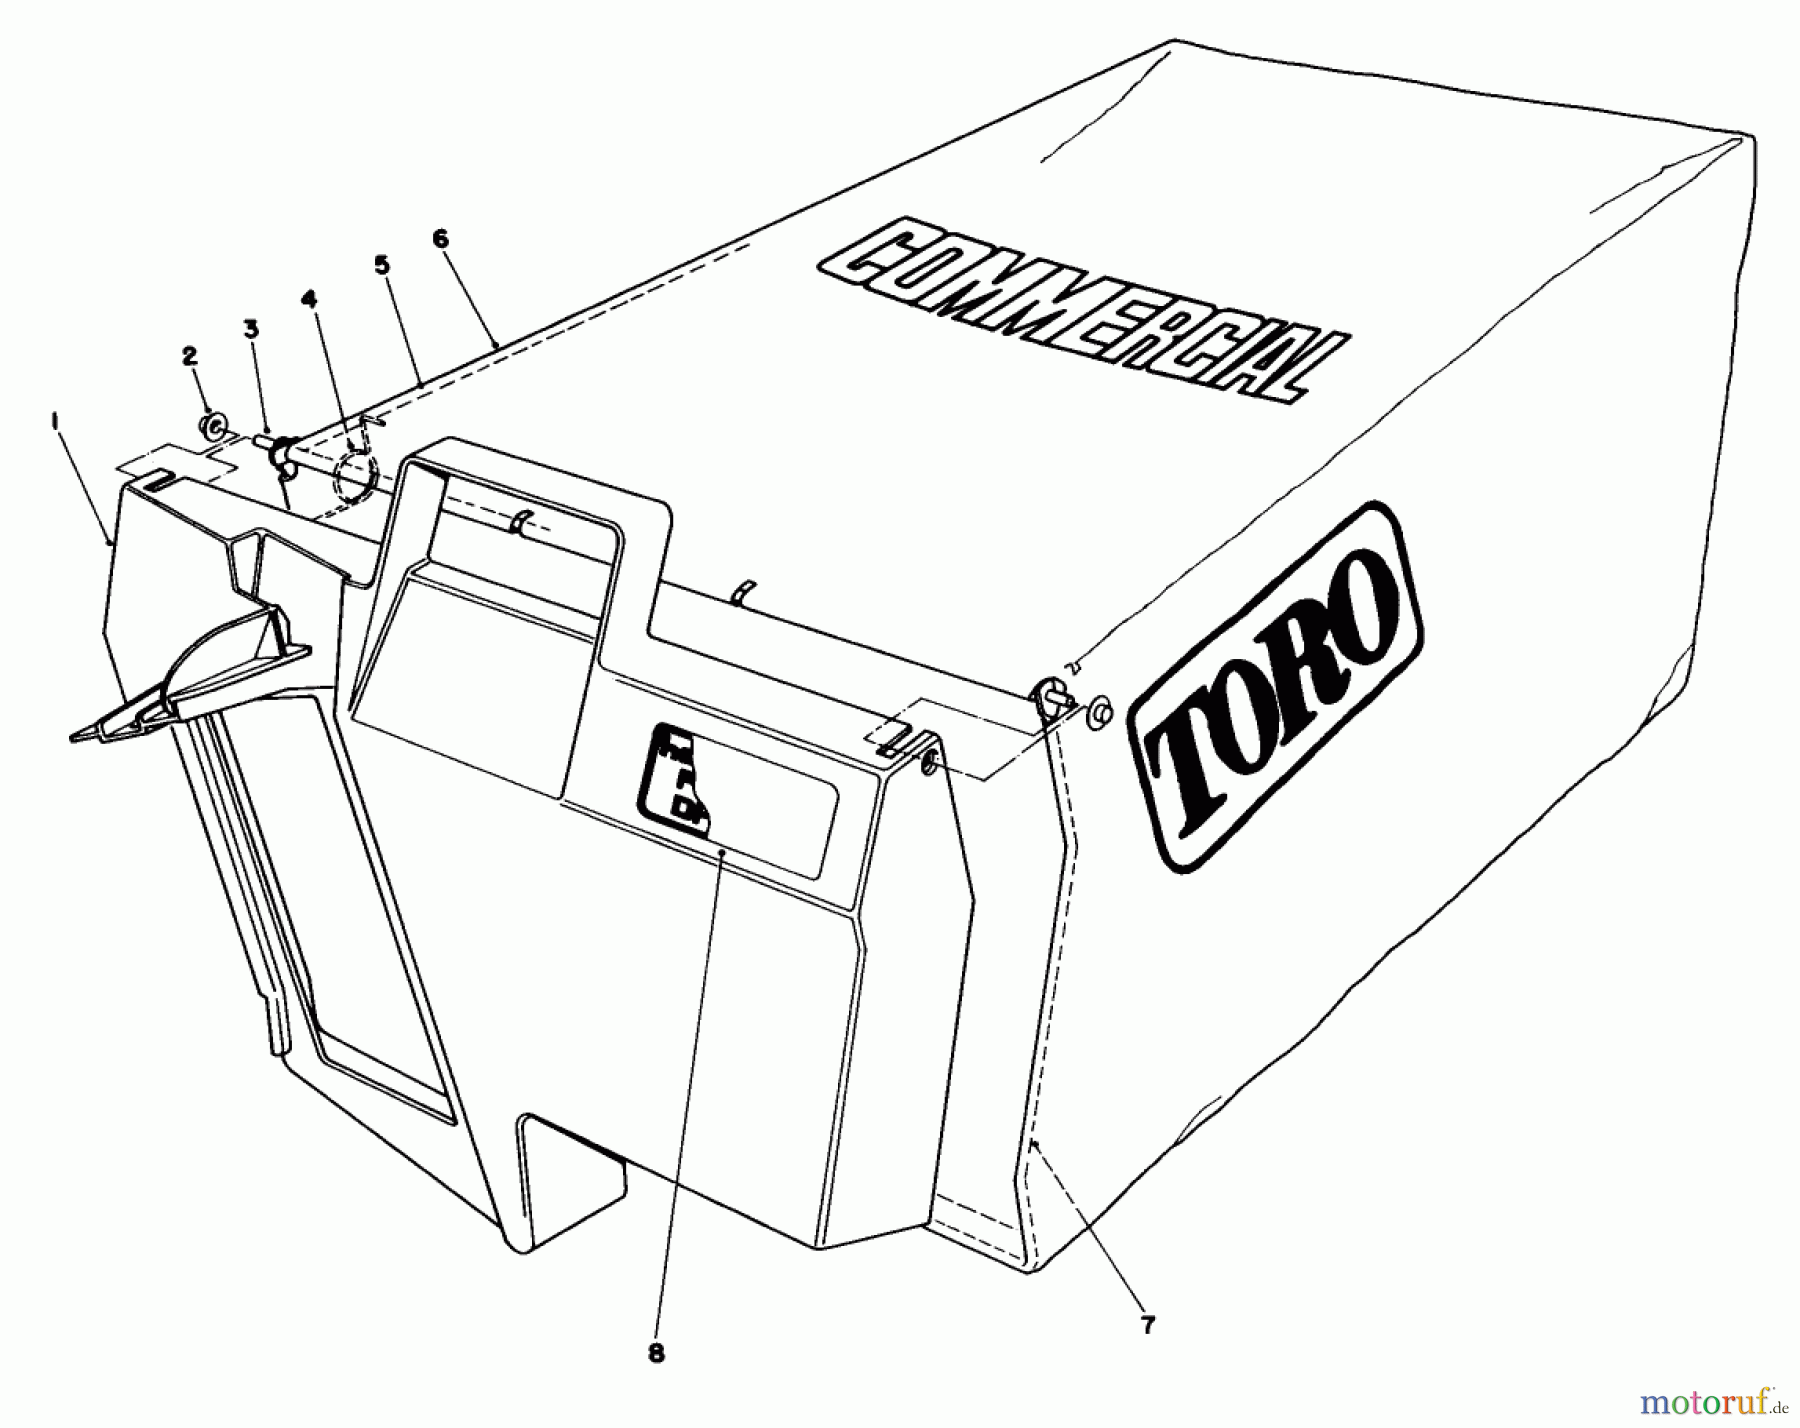  Toro Neu Mowers, Walk-Behind Seite 2 22015 - Toro Lawnmower, 1984 (4000001-4999999) GRASS BAG ASSEMBLY NO. 11-5609